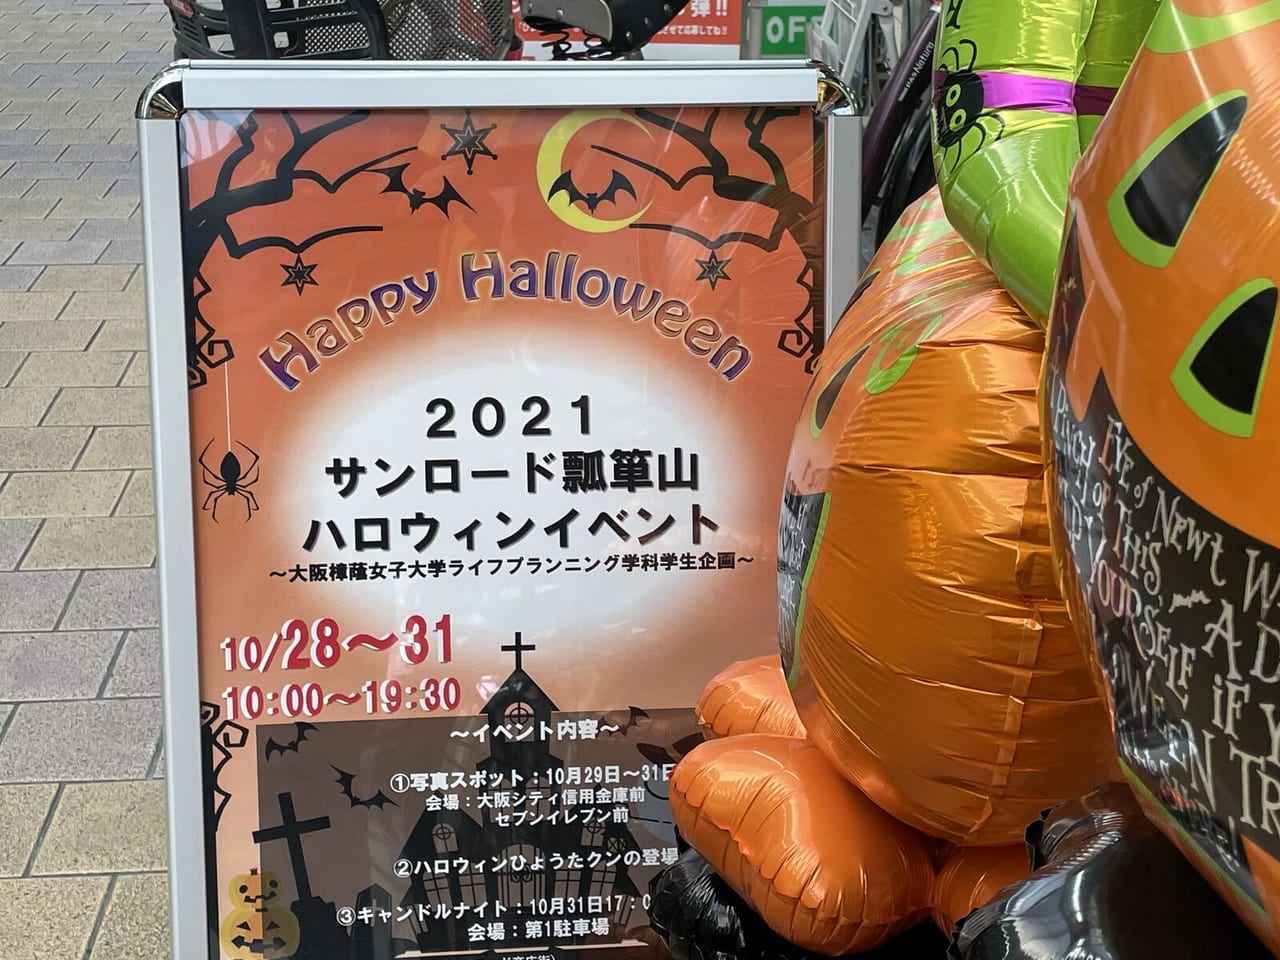 東大阪市 キャンドルナイトに写真スポット 商店街で4日間の ハロウィンイベント が開催されます 号外net 東大阪市